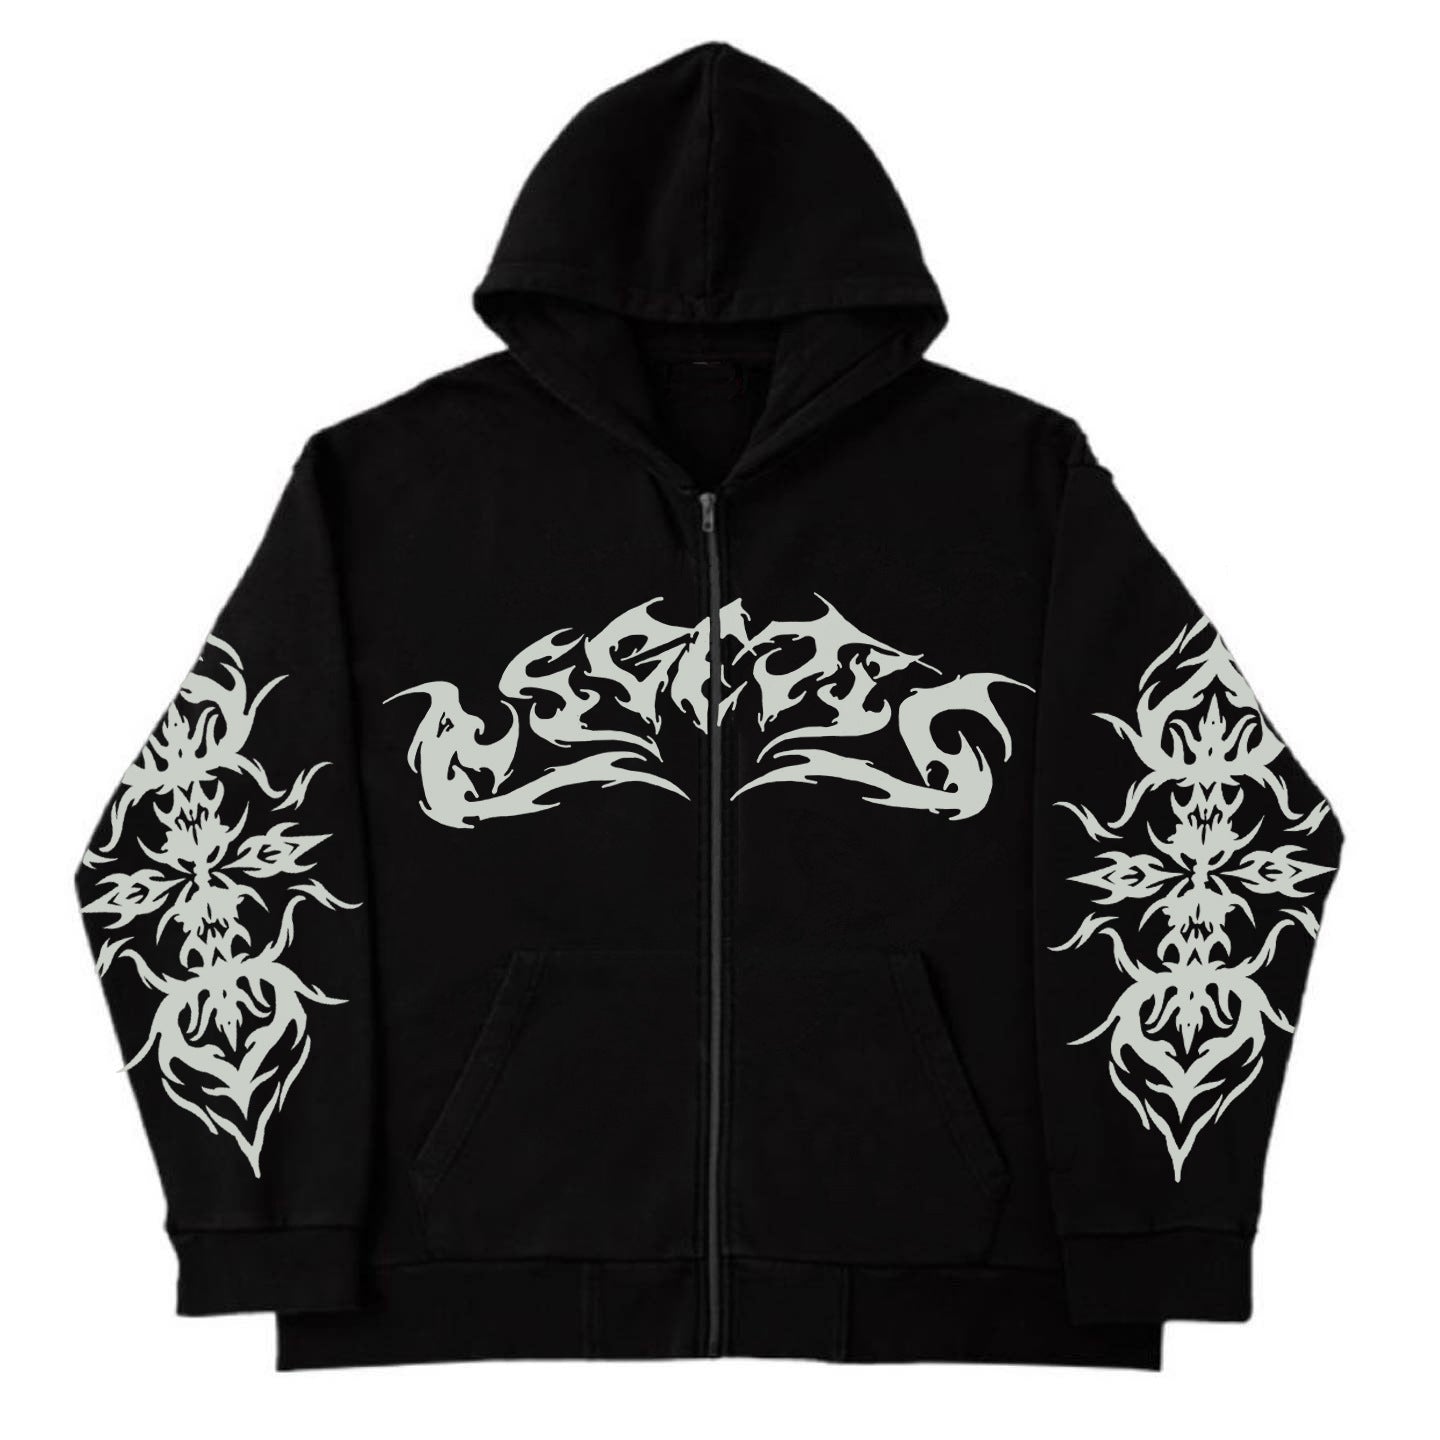 Street Trend Y2g Gothic Punk Fashion Zipper Hooded Sweatshirt